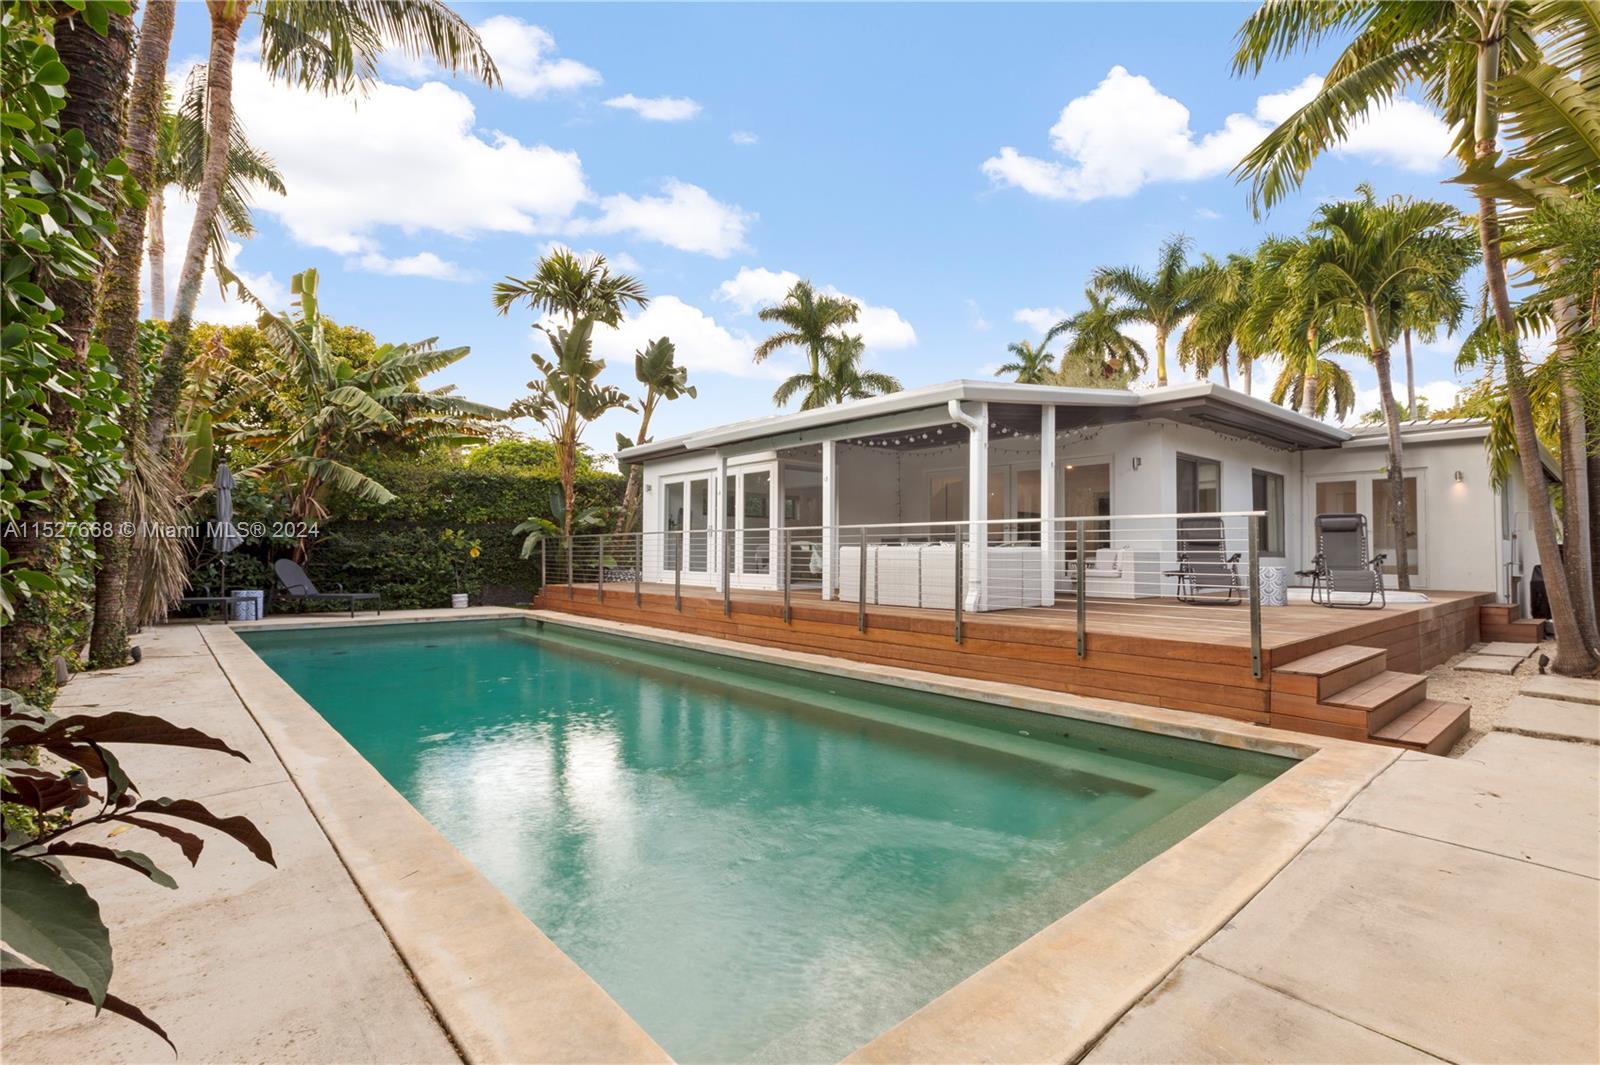 Rental Property at 114 5th Dilido Ter, Miami Beach, Miami-Dade County, Florida - Bedrooms: 3 
Bathrooms: 2  - $10,000 MO.